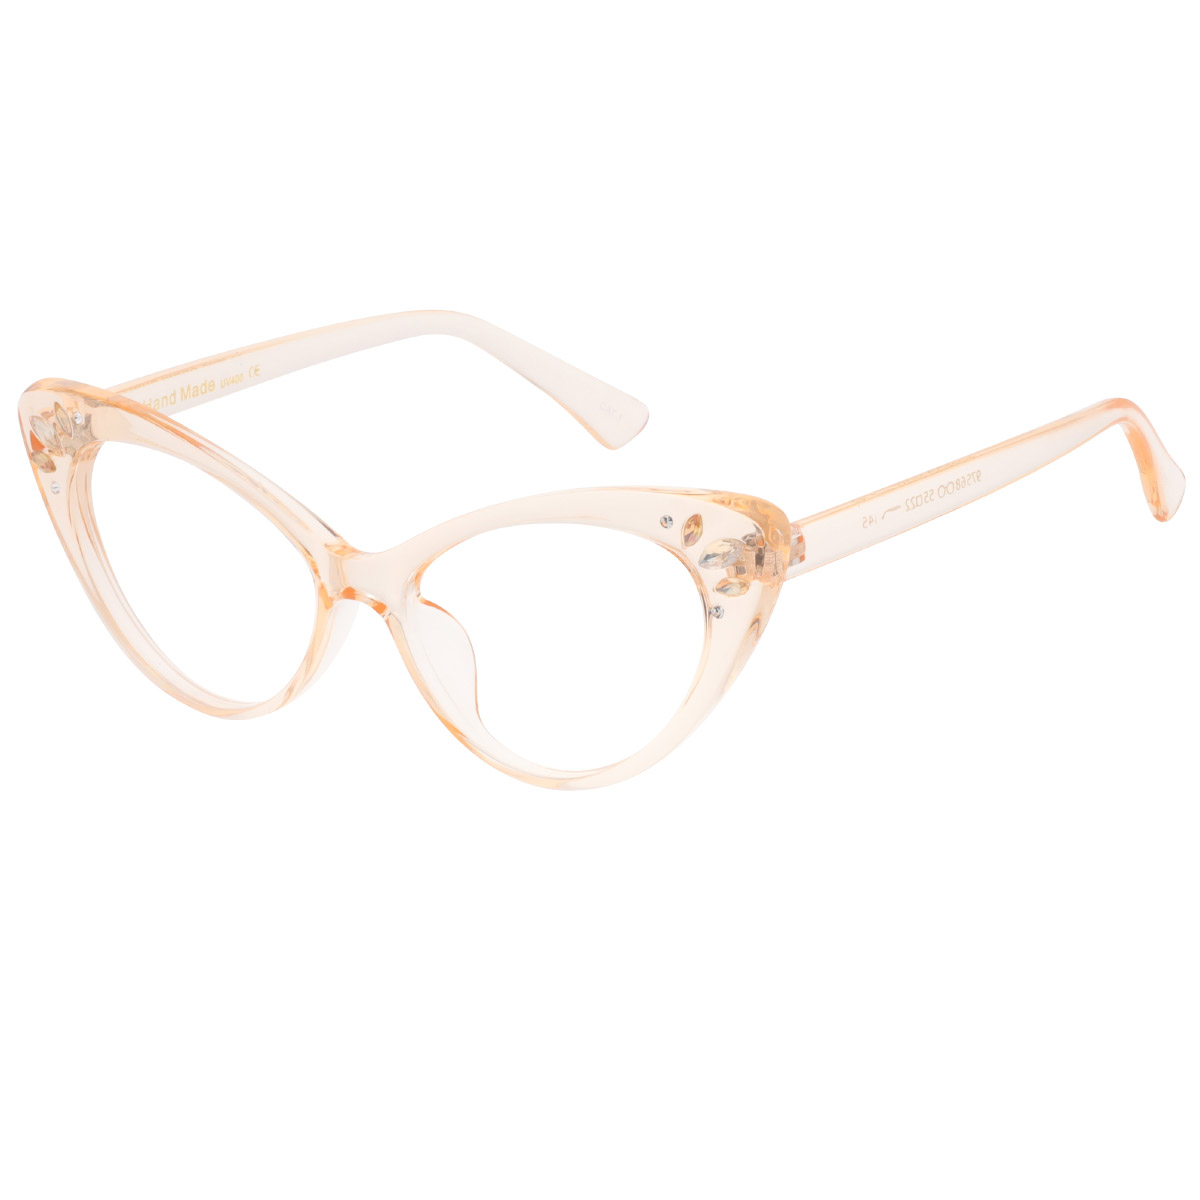 Celaenae - Cat-eye Orange Reading Glasses for Women